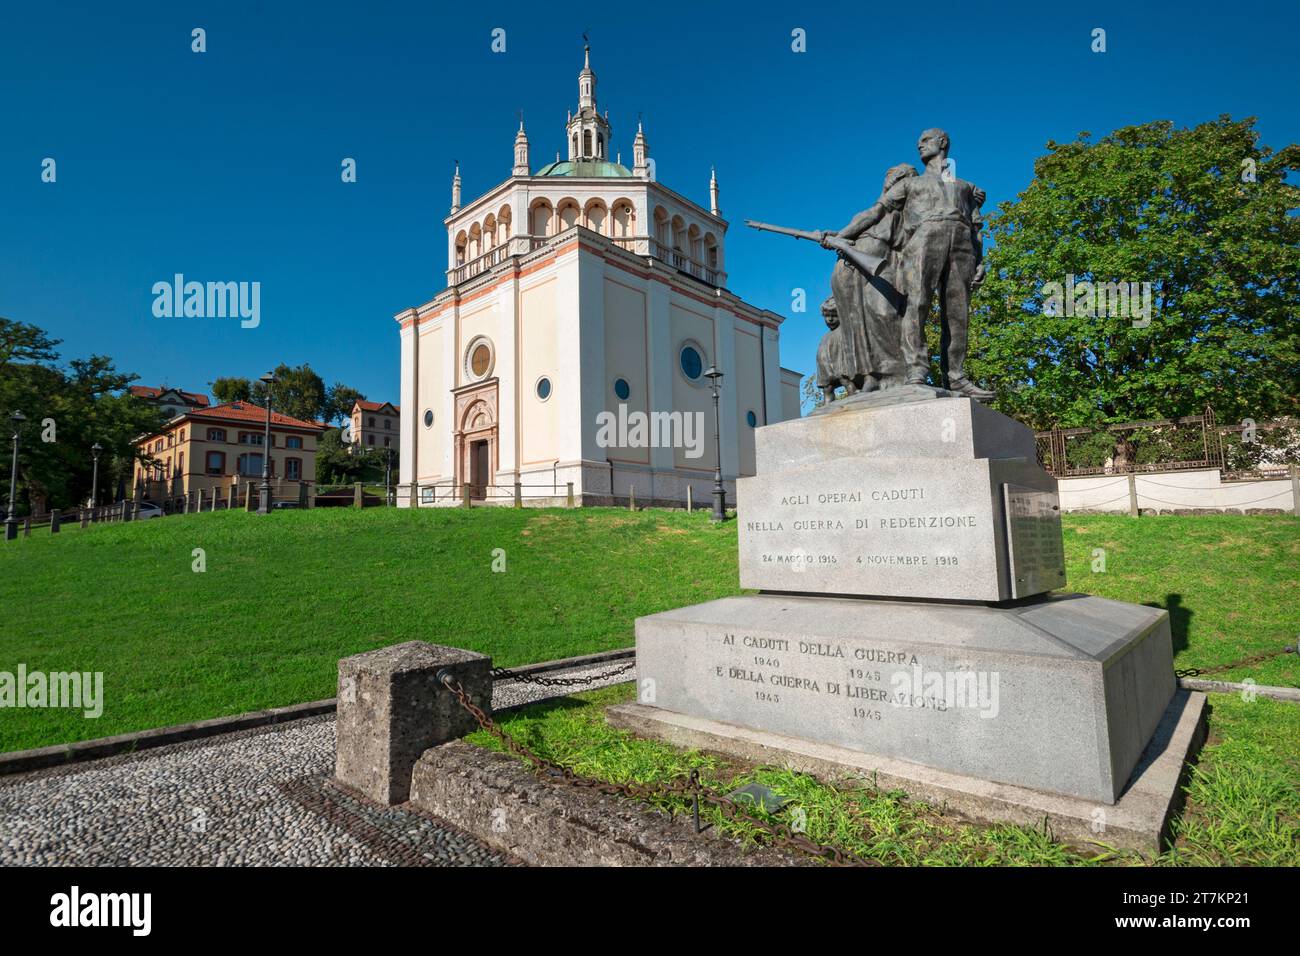 Italy, Lombardy, Crespi d'Adda, World Heritage Site, Worker Village, Monumento ai Lavoratori Caduti Monument by Amleto Cataldi Stock Photo